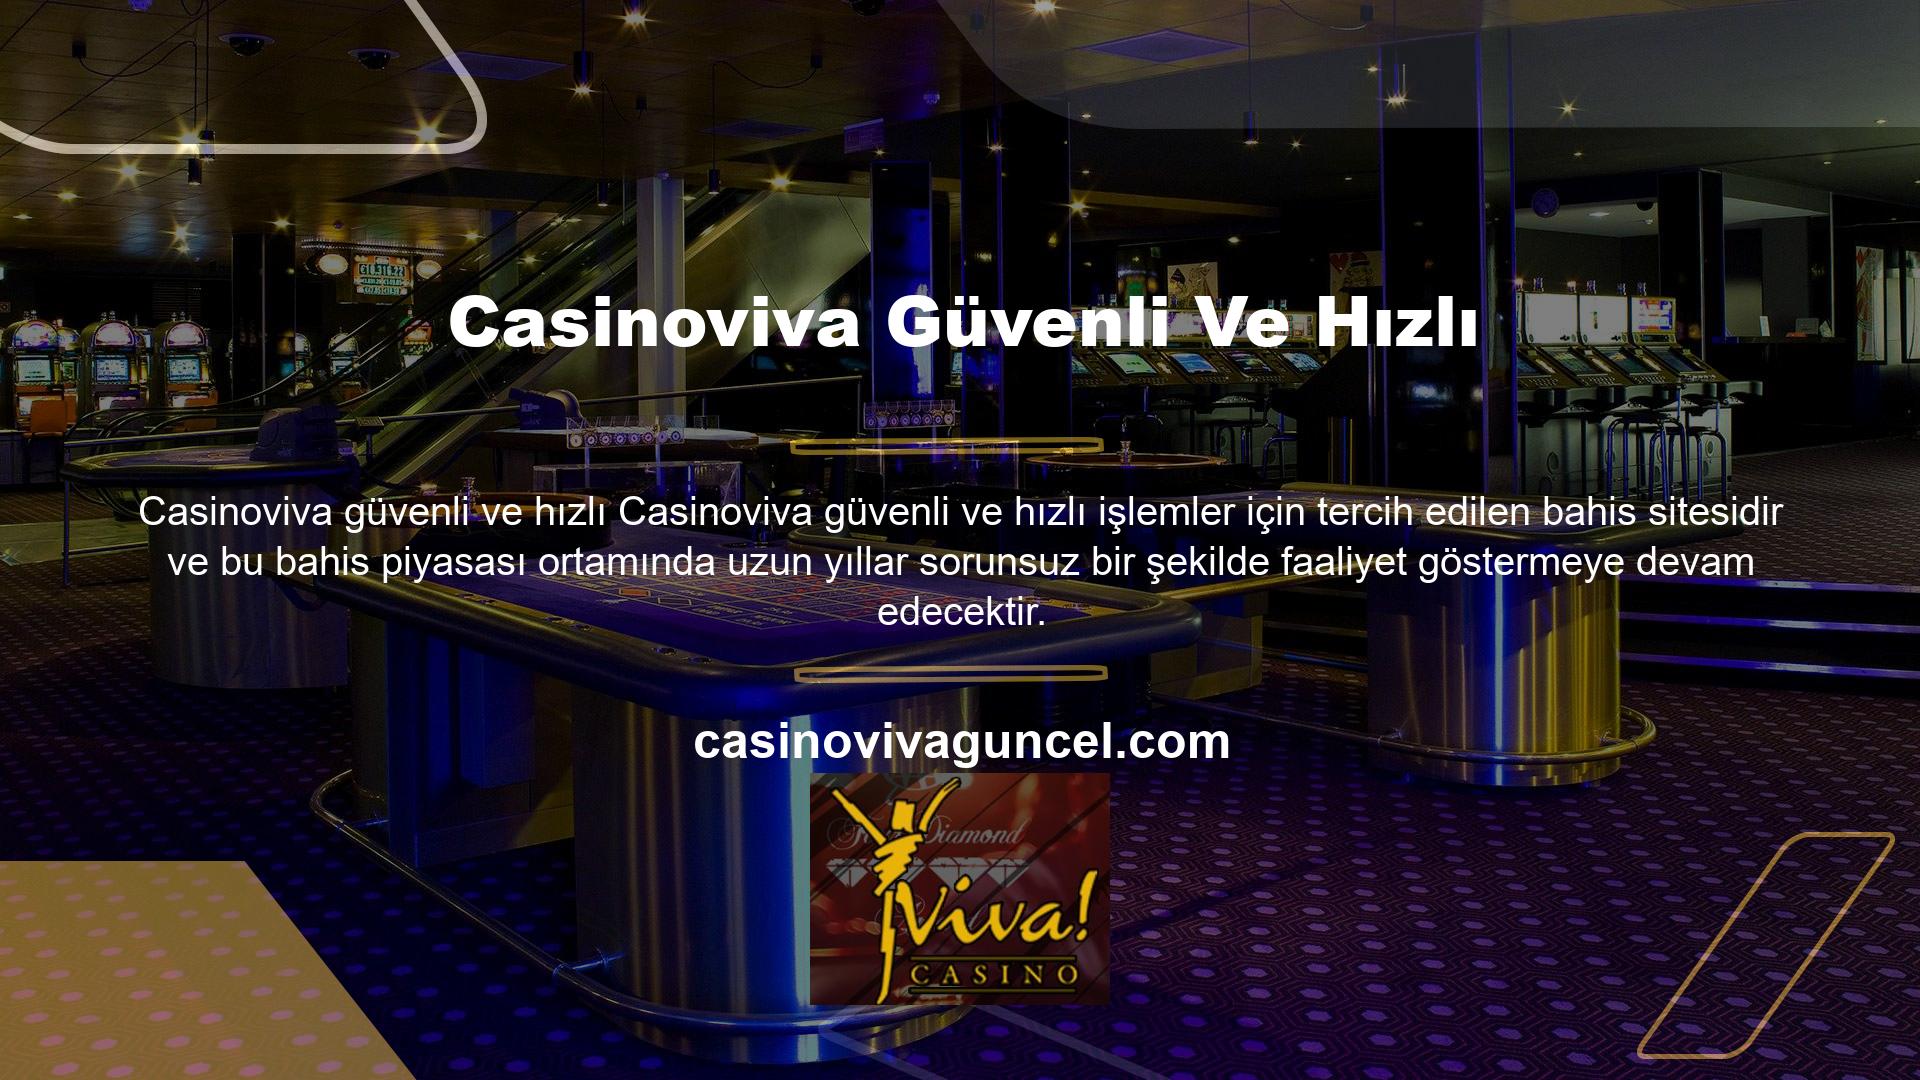 Casinoviva, müşterilerine sanal casino, casino, slot makineleri veya spor bahislerinin keyfini çıkarma fırsatı sunuyor ve 7-24 hizmet felsefesi aracılığıyla verimli canlı destek sağlamaya kararlıdır